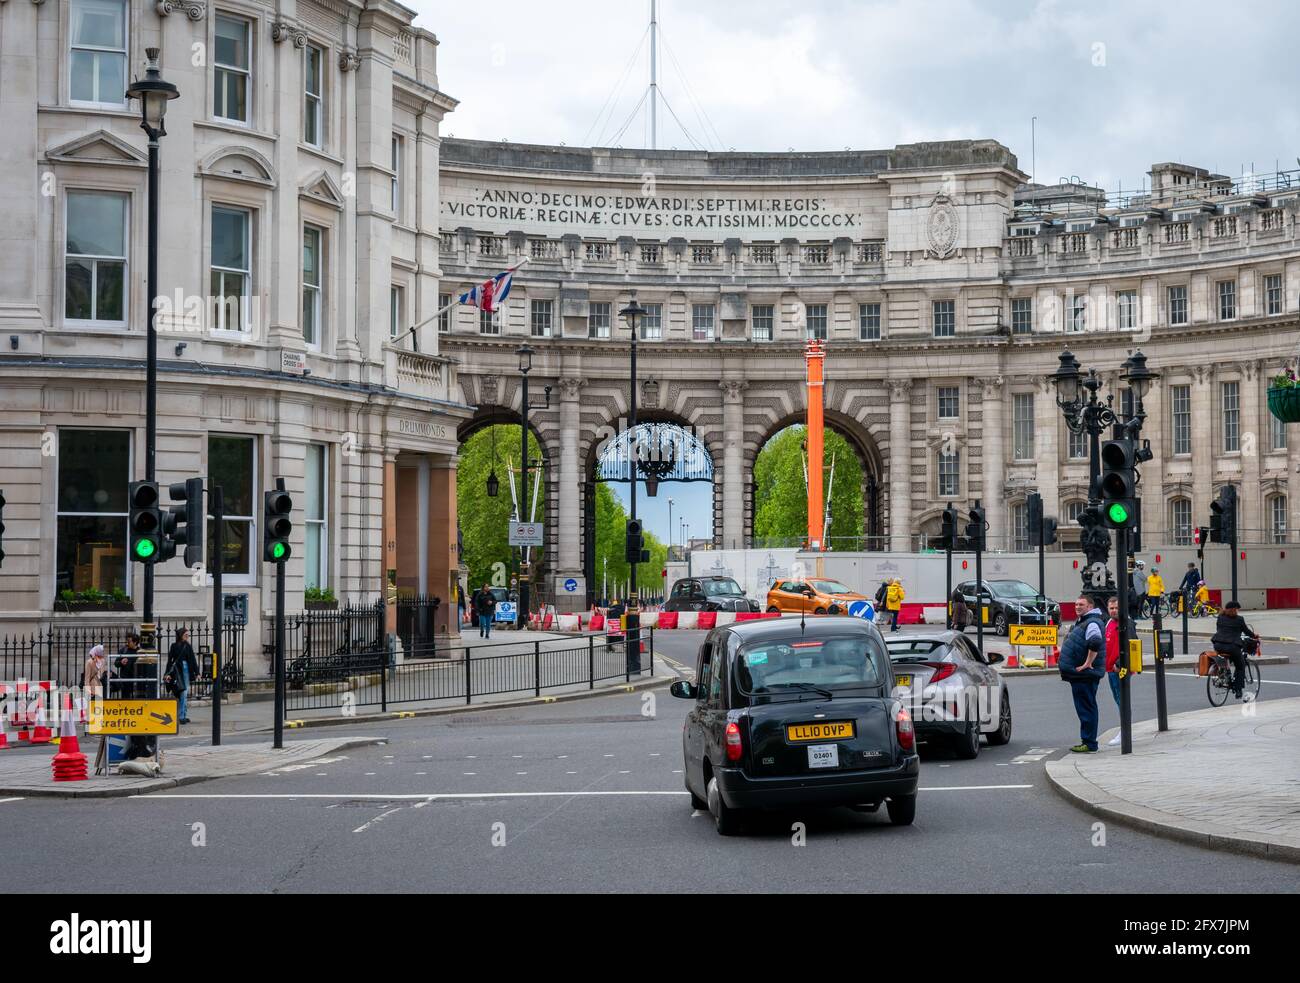 Londres. REINO UNIDO- 05.23.2021. El monumento eduardiano Admiralty Arch entre Trafalgar Square y el Mall. Foto de stock